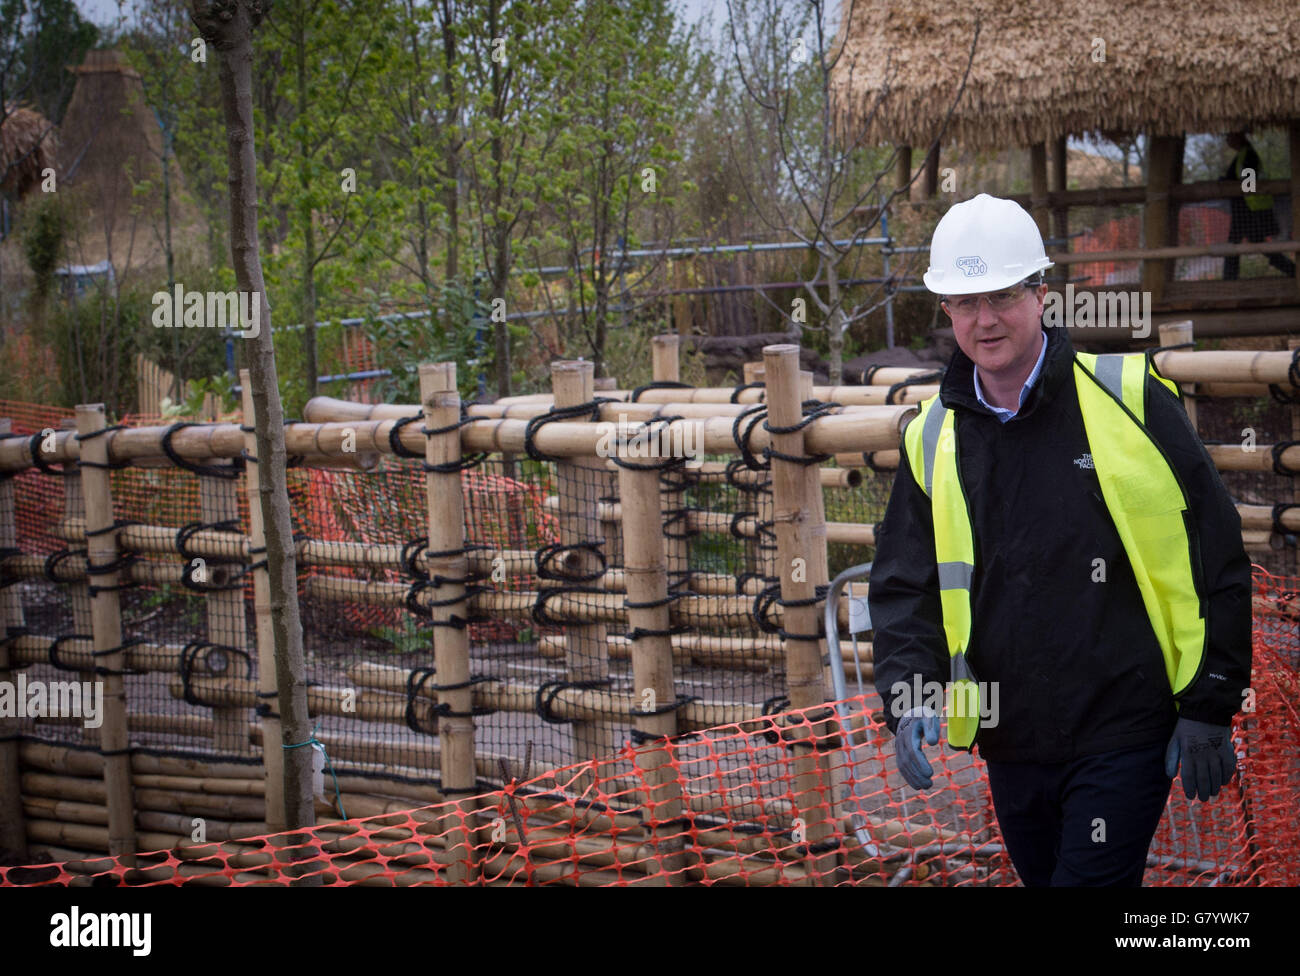 Il primo ministro David Cameron visita un nuovo recinto allo zoo di Chester, che ospiterà scimmie quando aprirà quest'estate. Il leader del Partito conservatore è in un tour di 36 ore della Gran Bretagna prima delle elezioni generali. ASSOCIAZIONE STAMPA mercoledì 6 maggio 2015. Vedere i Tory DI ELEZIONE della storia del PA. Il credito fotografico dovrebbe essere: Stefan Rousseau/PA. Foto Stock